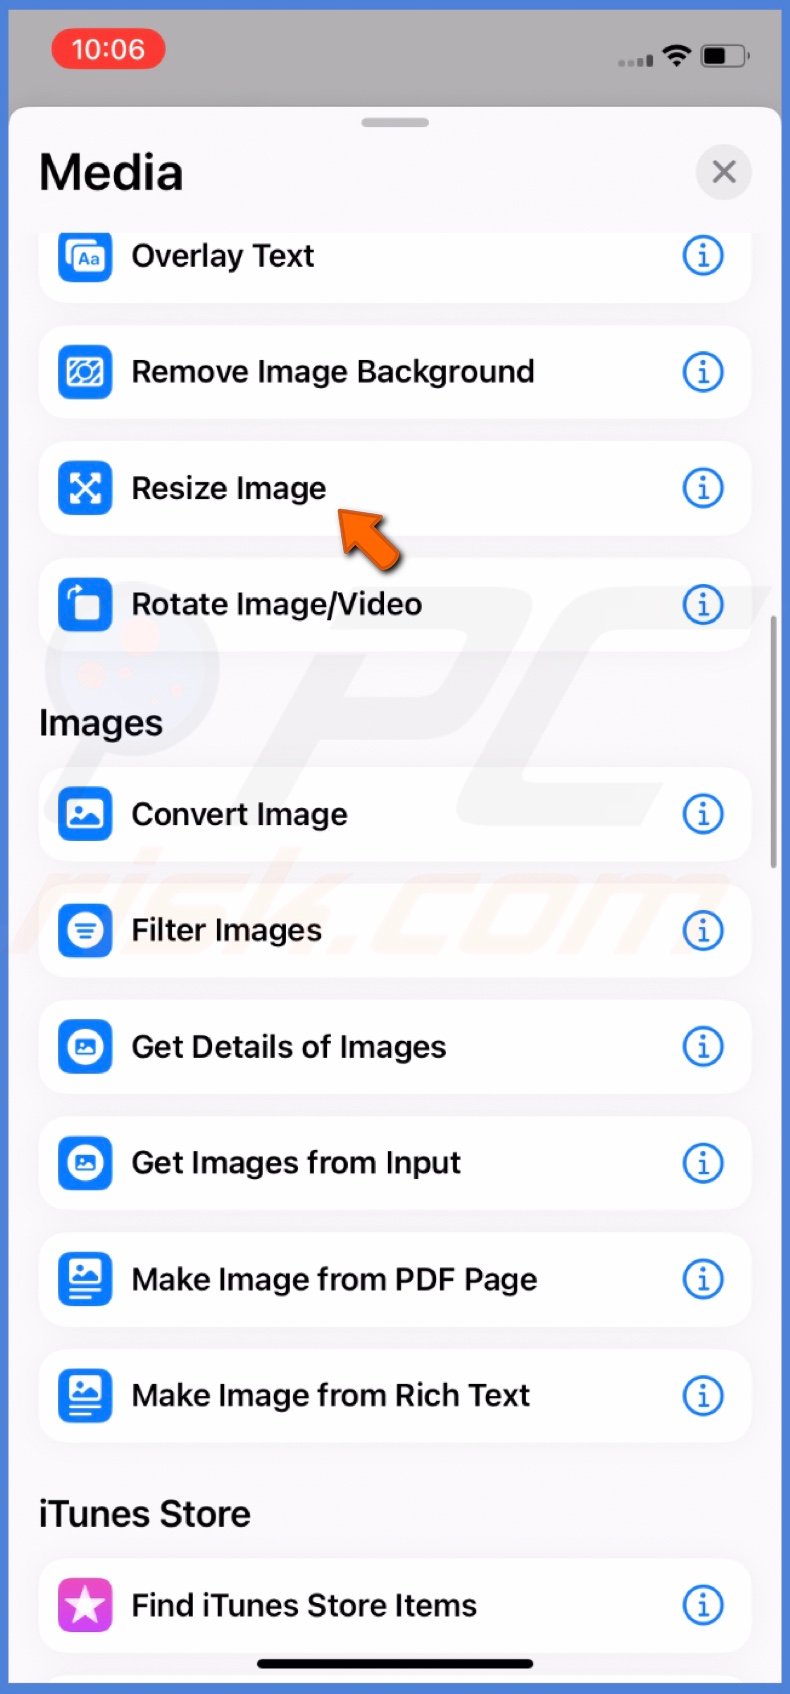 Select Resize Image